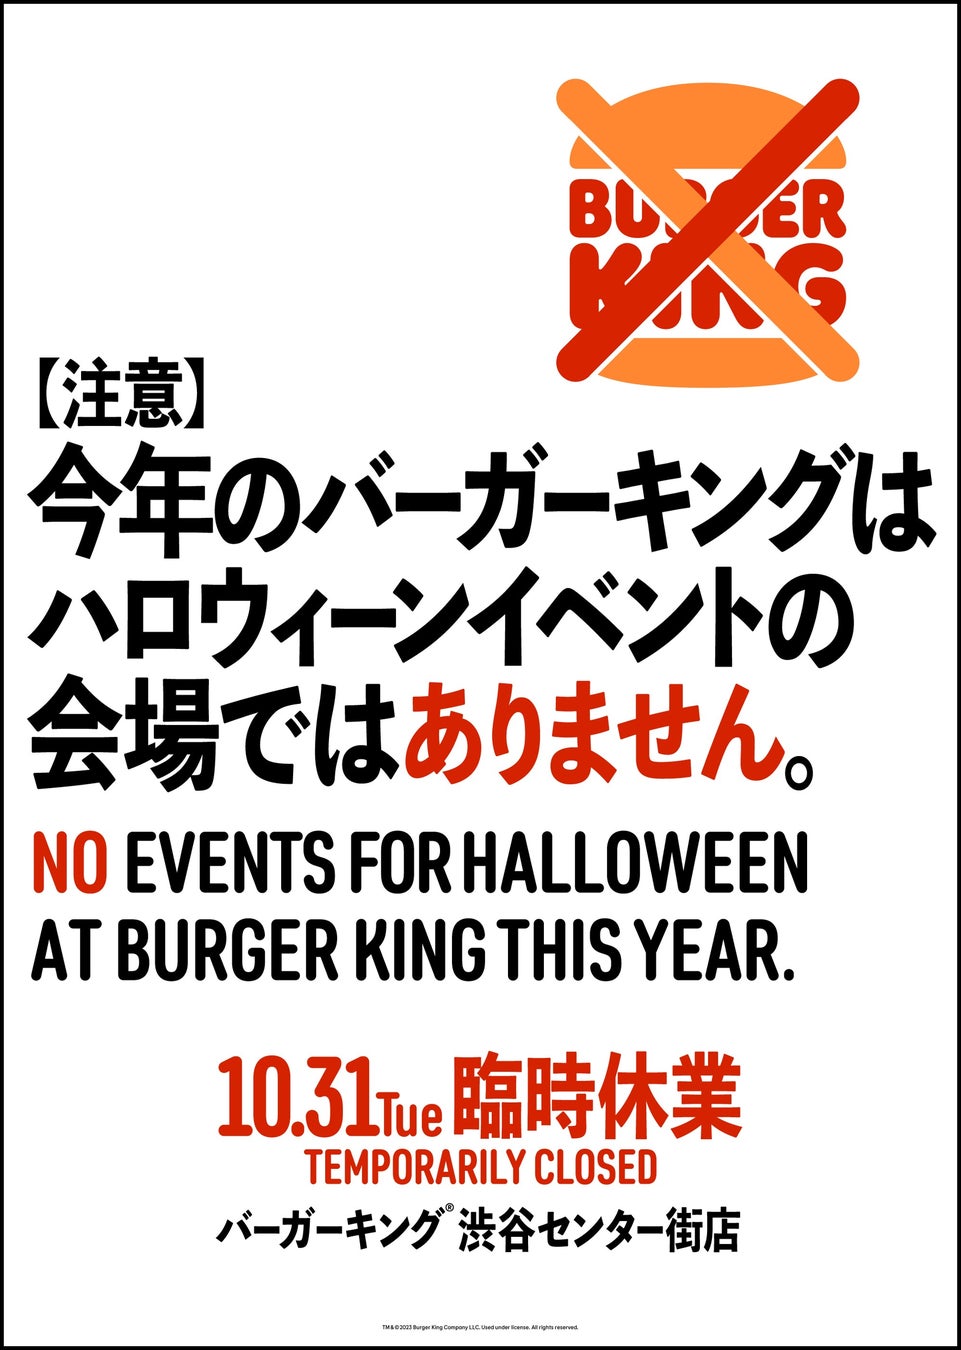 【臨時休業のお知らせ】バーガーキング® 渋谷センター街店は 10月31日（火）臨時休業いたします。今年のバーガーキング® はハロウィーンイベントの会場ではありません。